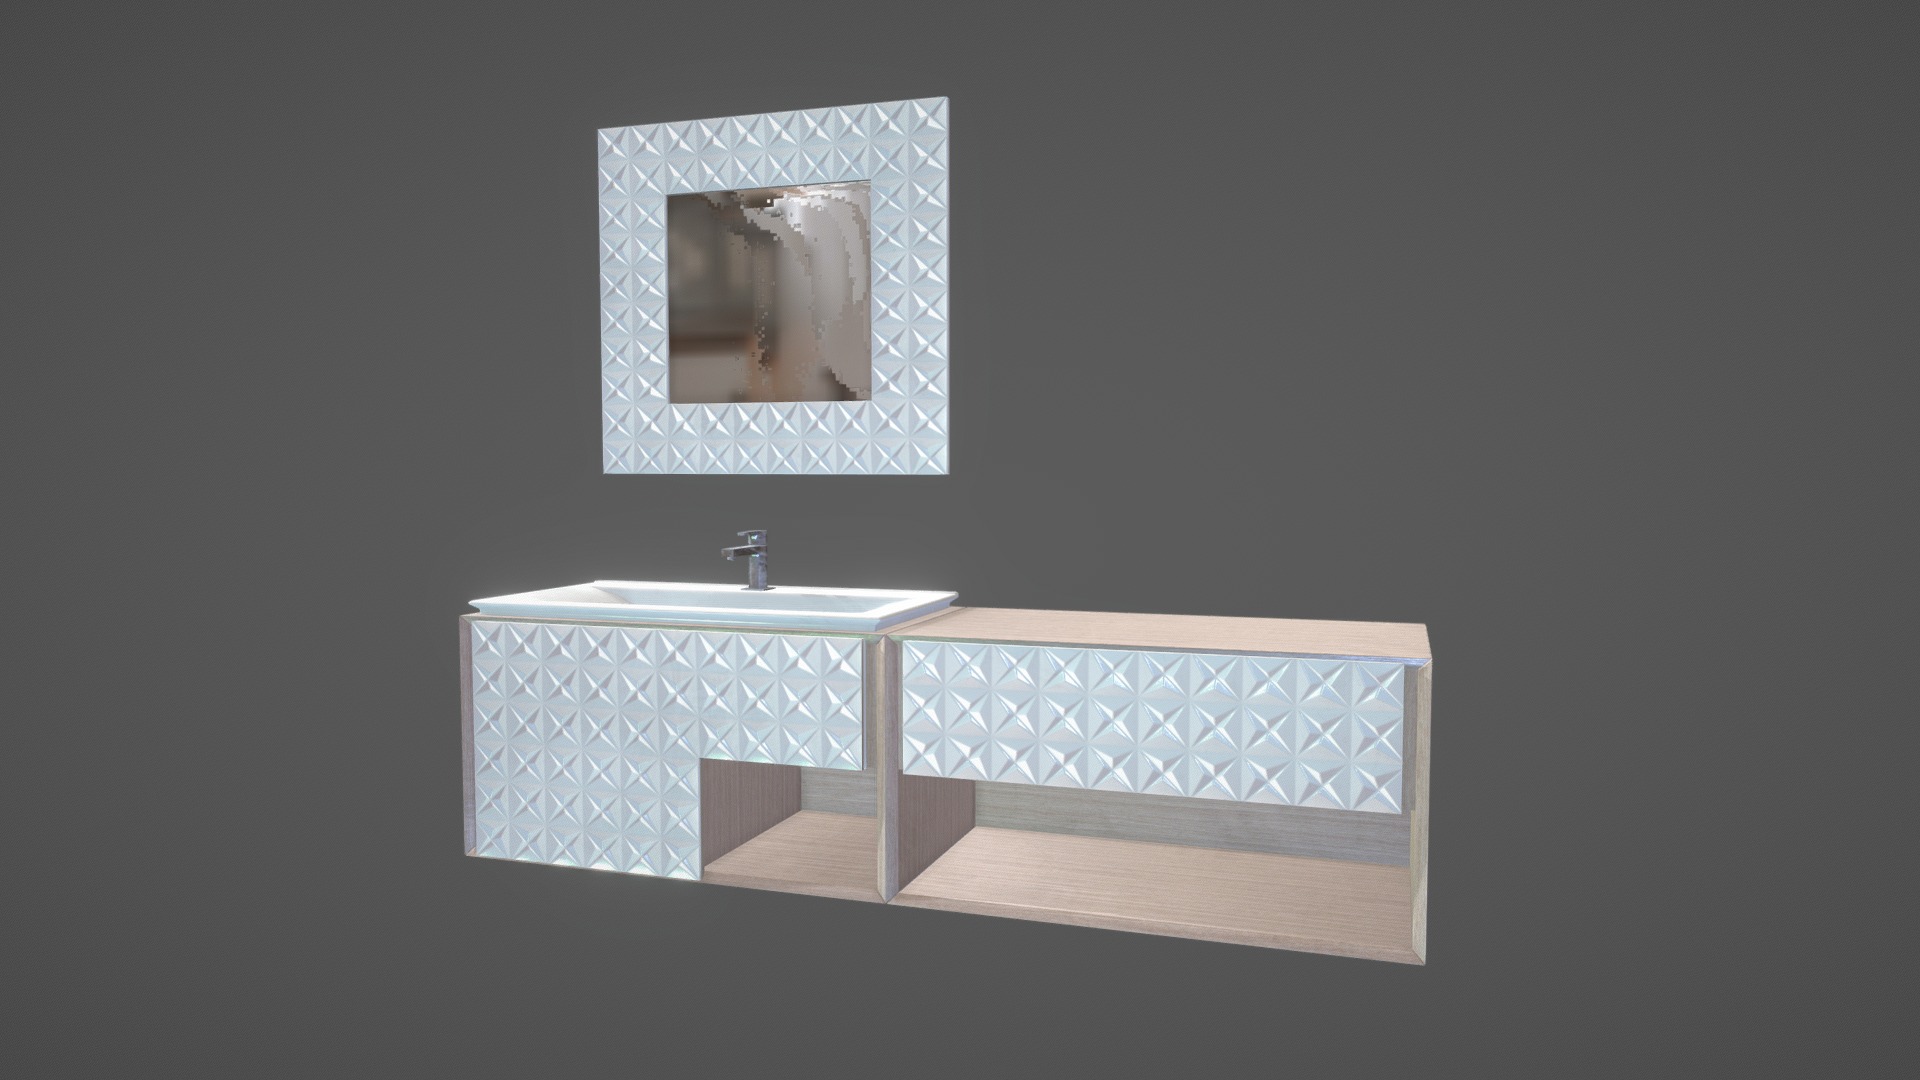 3D model Bathroom Basin - This is a 3D model of the Bathroom Basin. The 3D model is about a mirror on a wall.